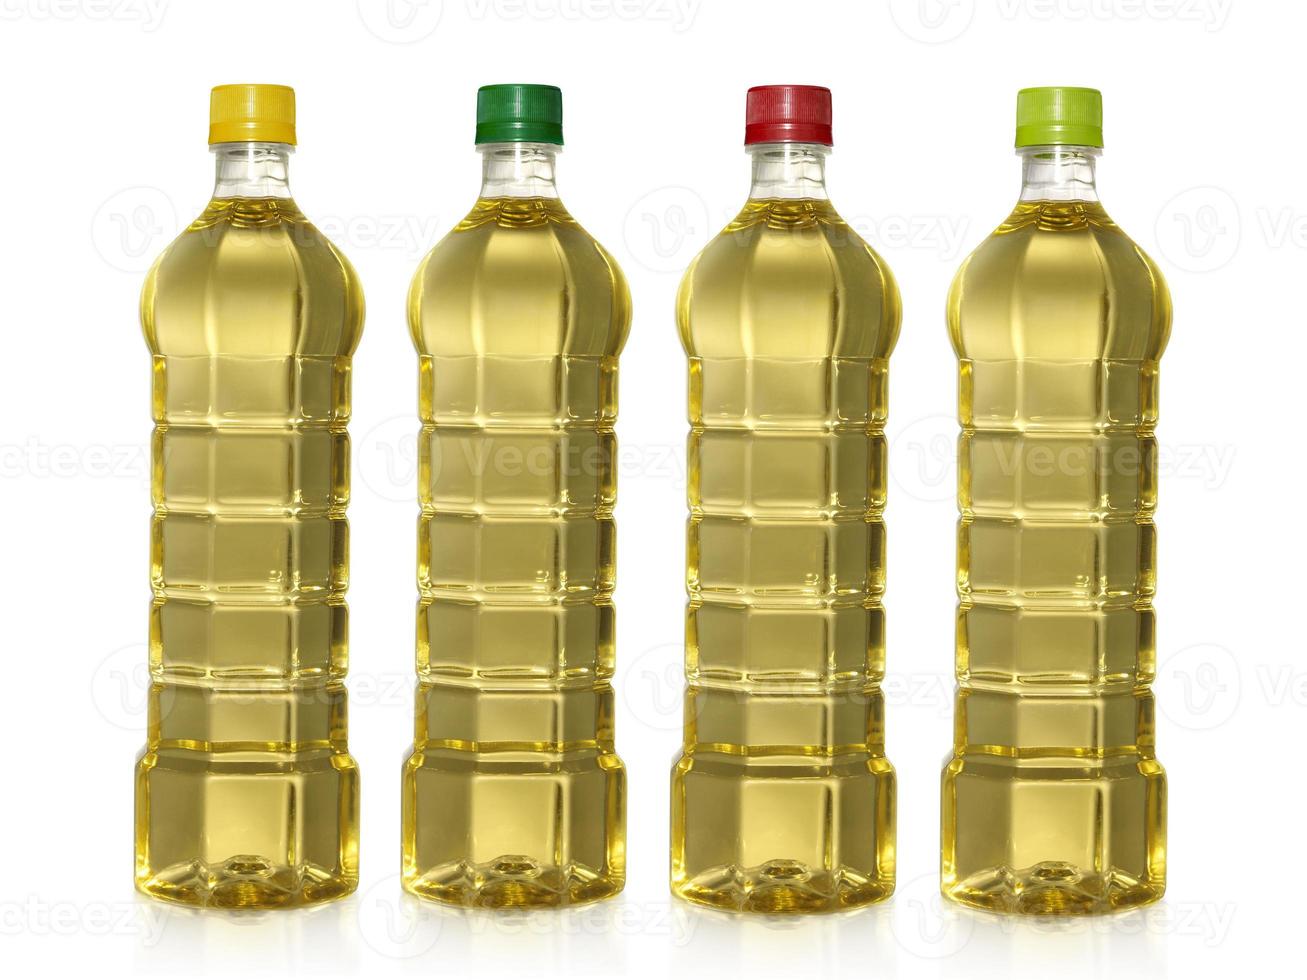 una bottiglia di olio da cucina di palmisti, isolato su sfondo bianco foto